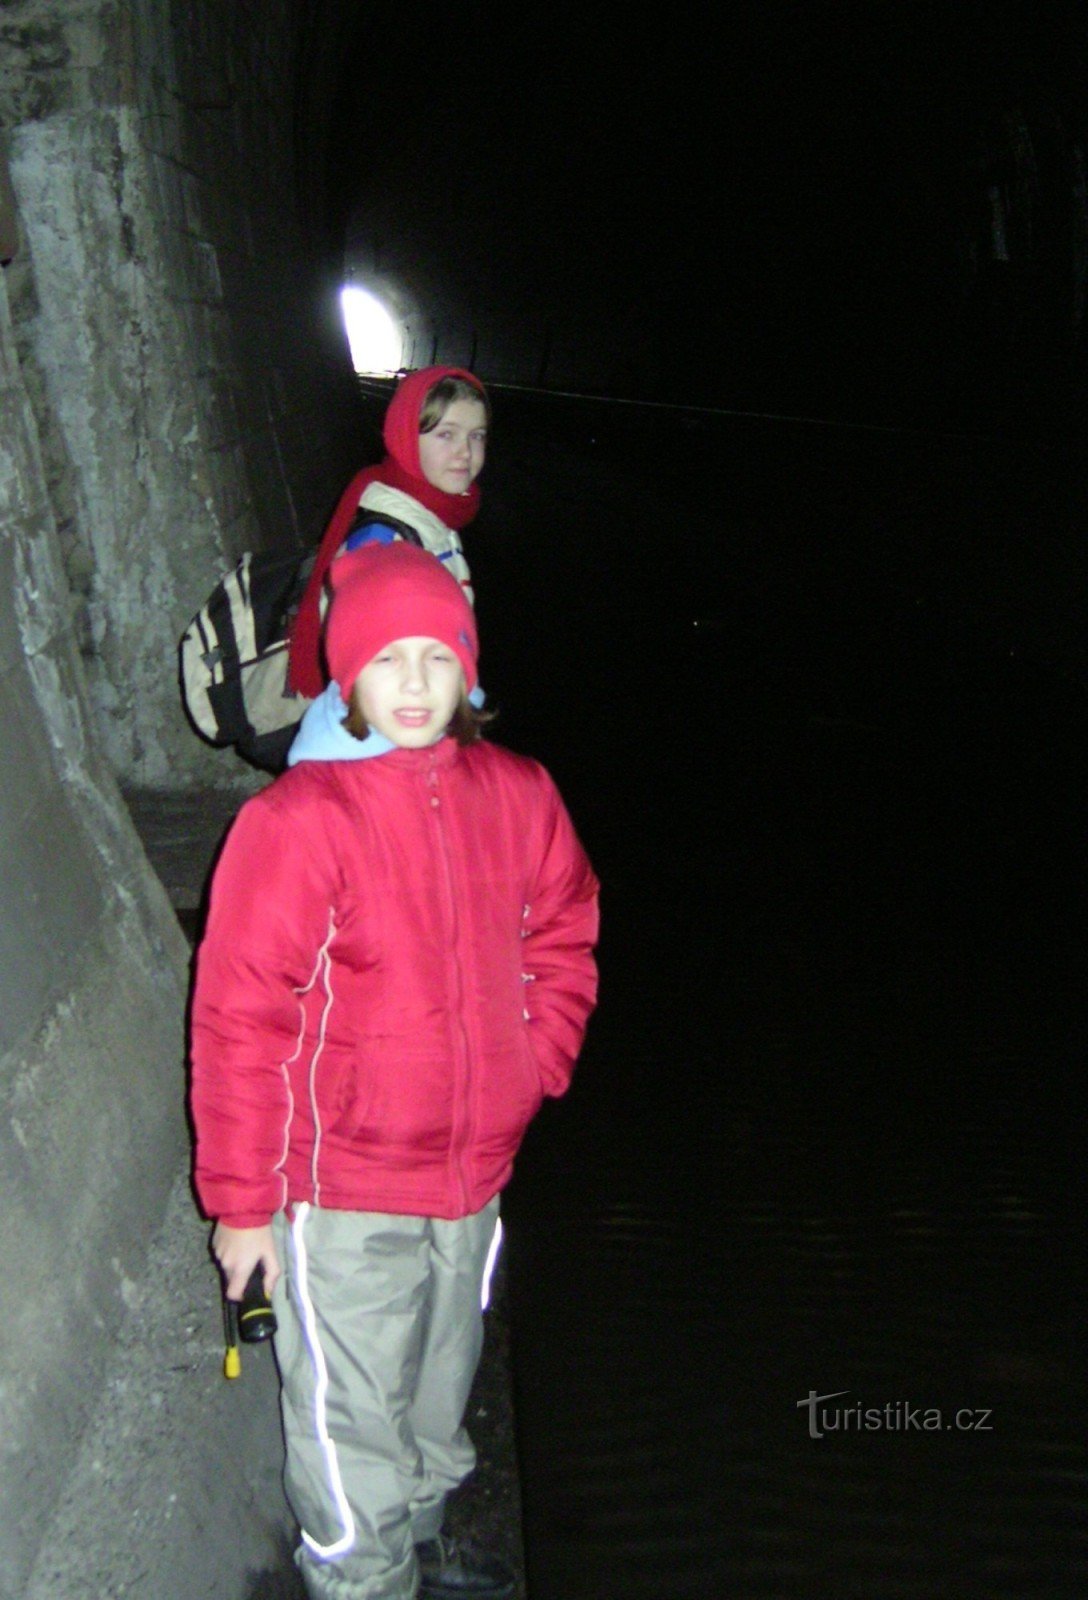 Malá Chuchle - um caminho escuro através de um túnel ferroviário